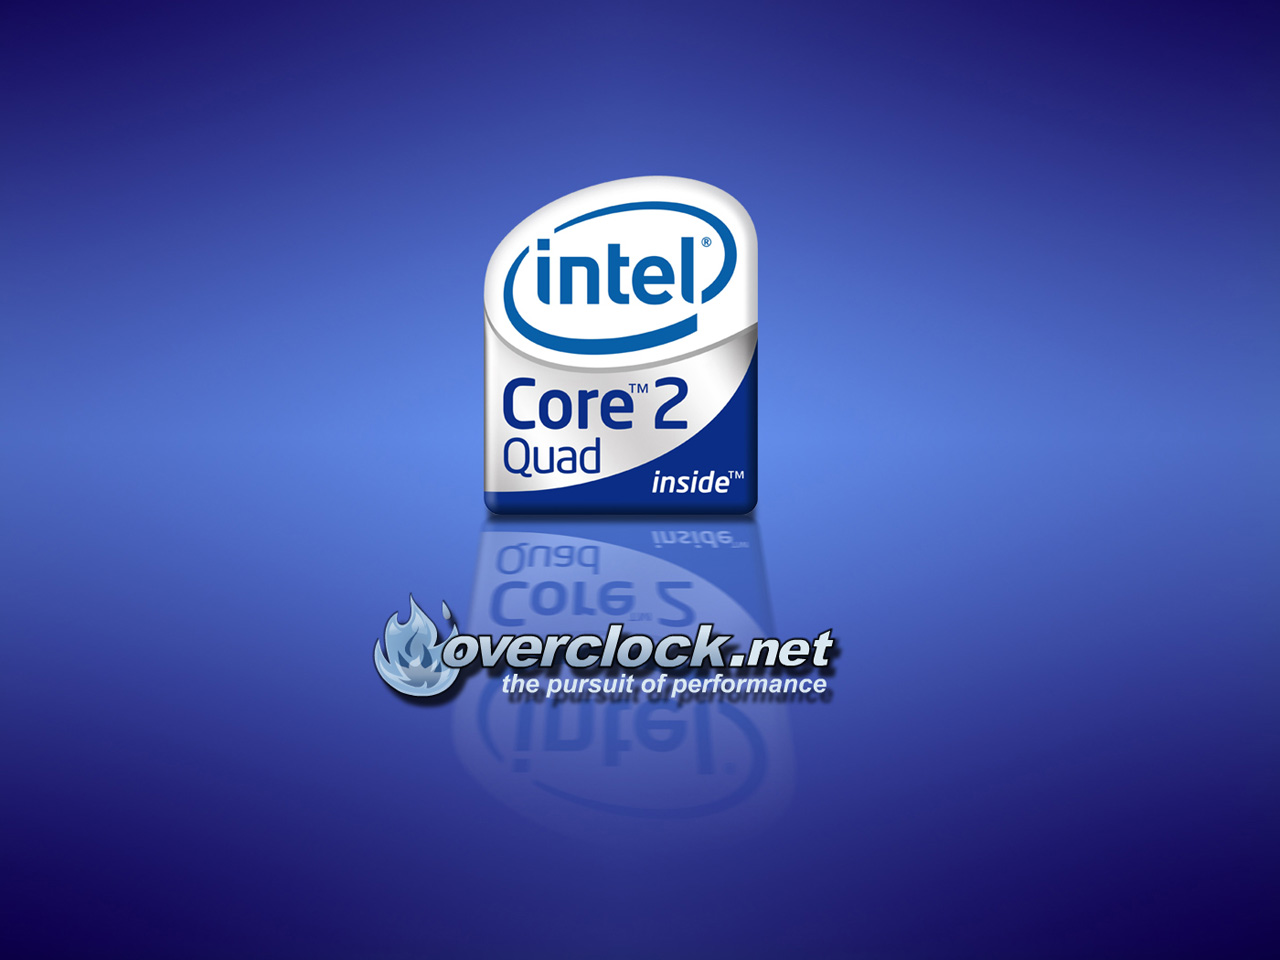 Wallpaper Intel Corel Quad Logomarca